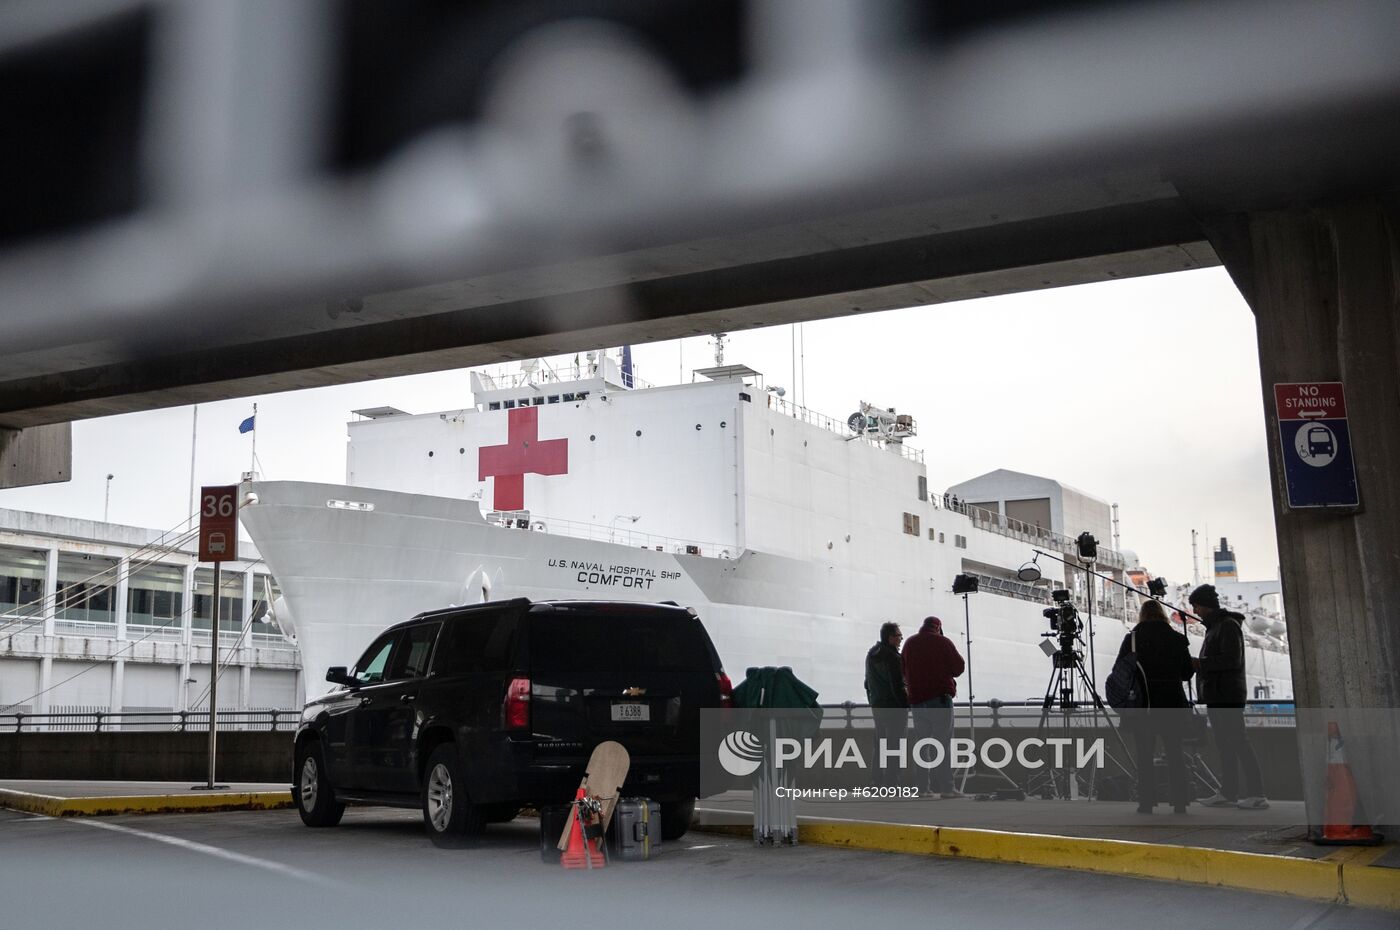 Плавучий госпиталь ВМС США прибыл в Нью-Йорк